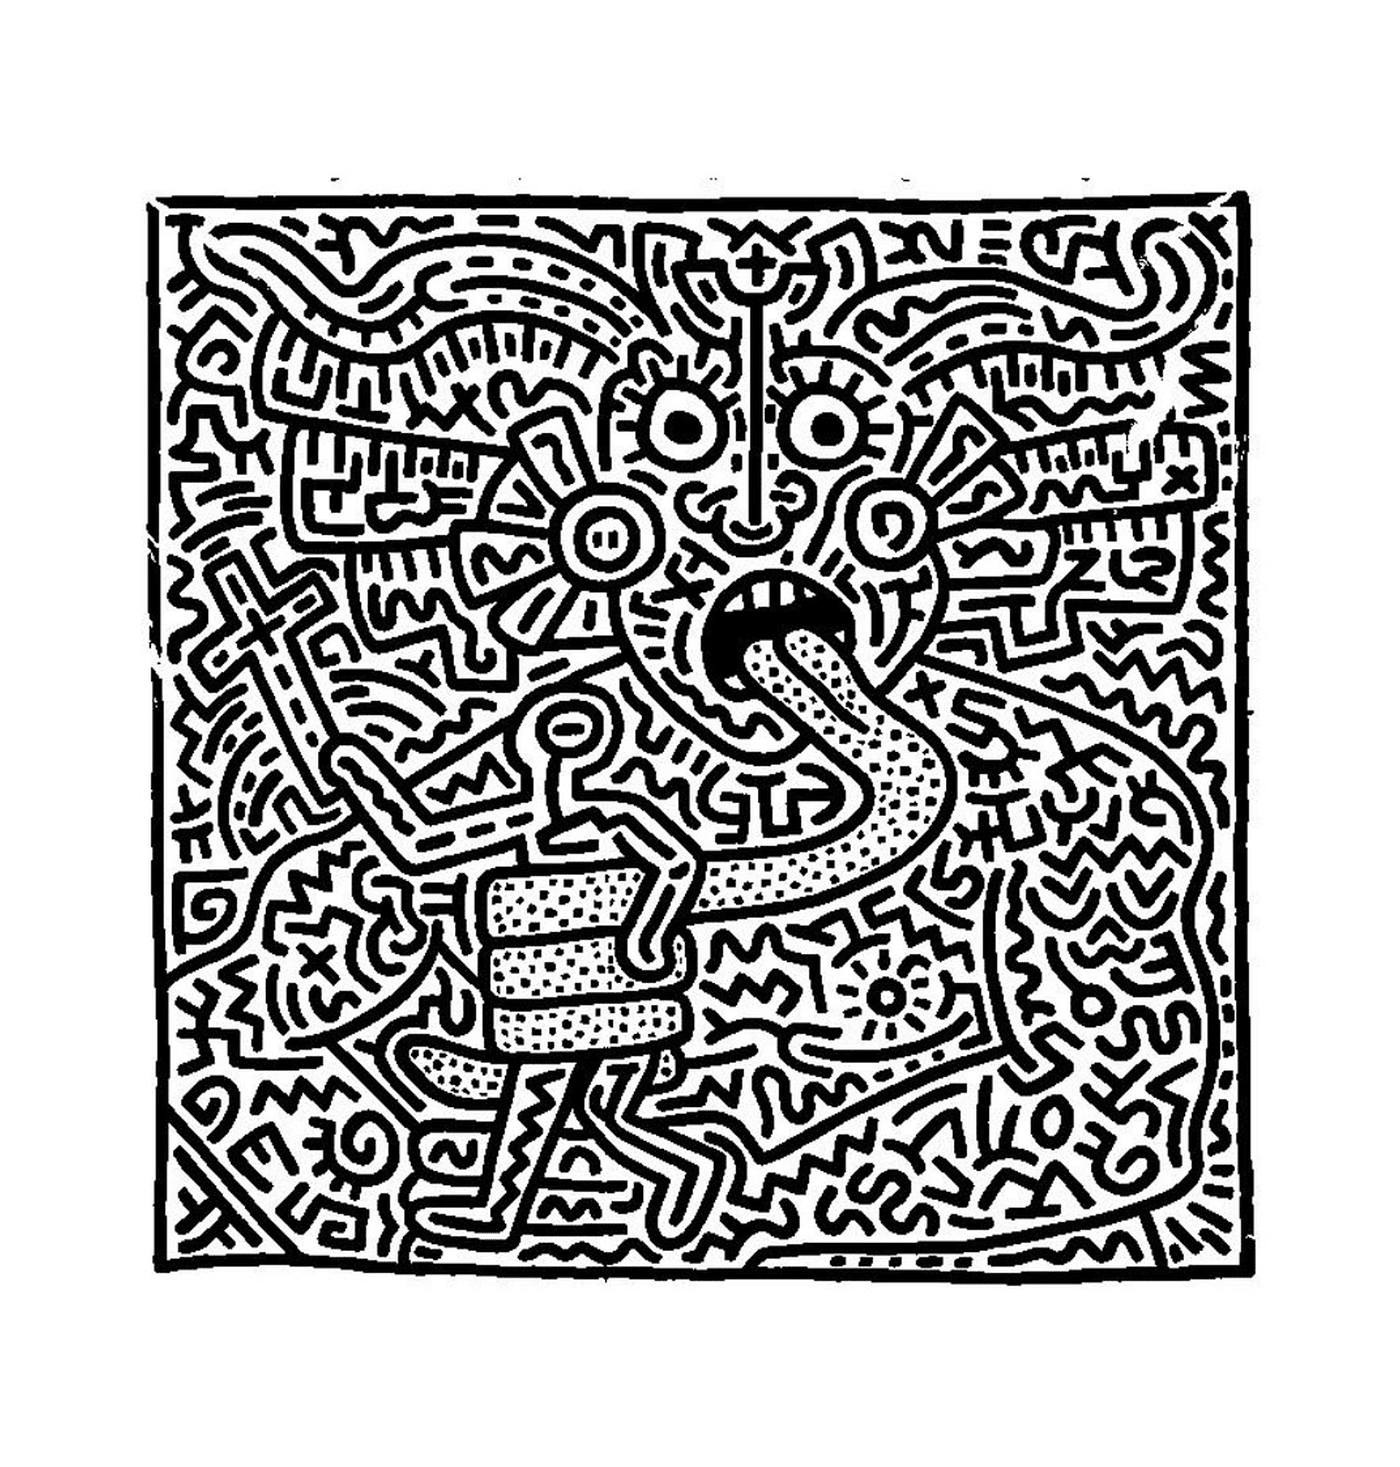  el rostro de un hombre según Keith Haring 